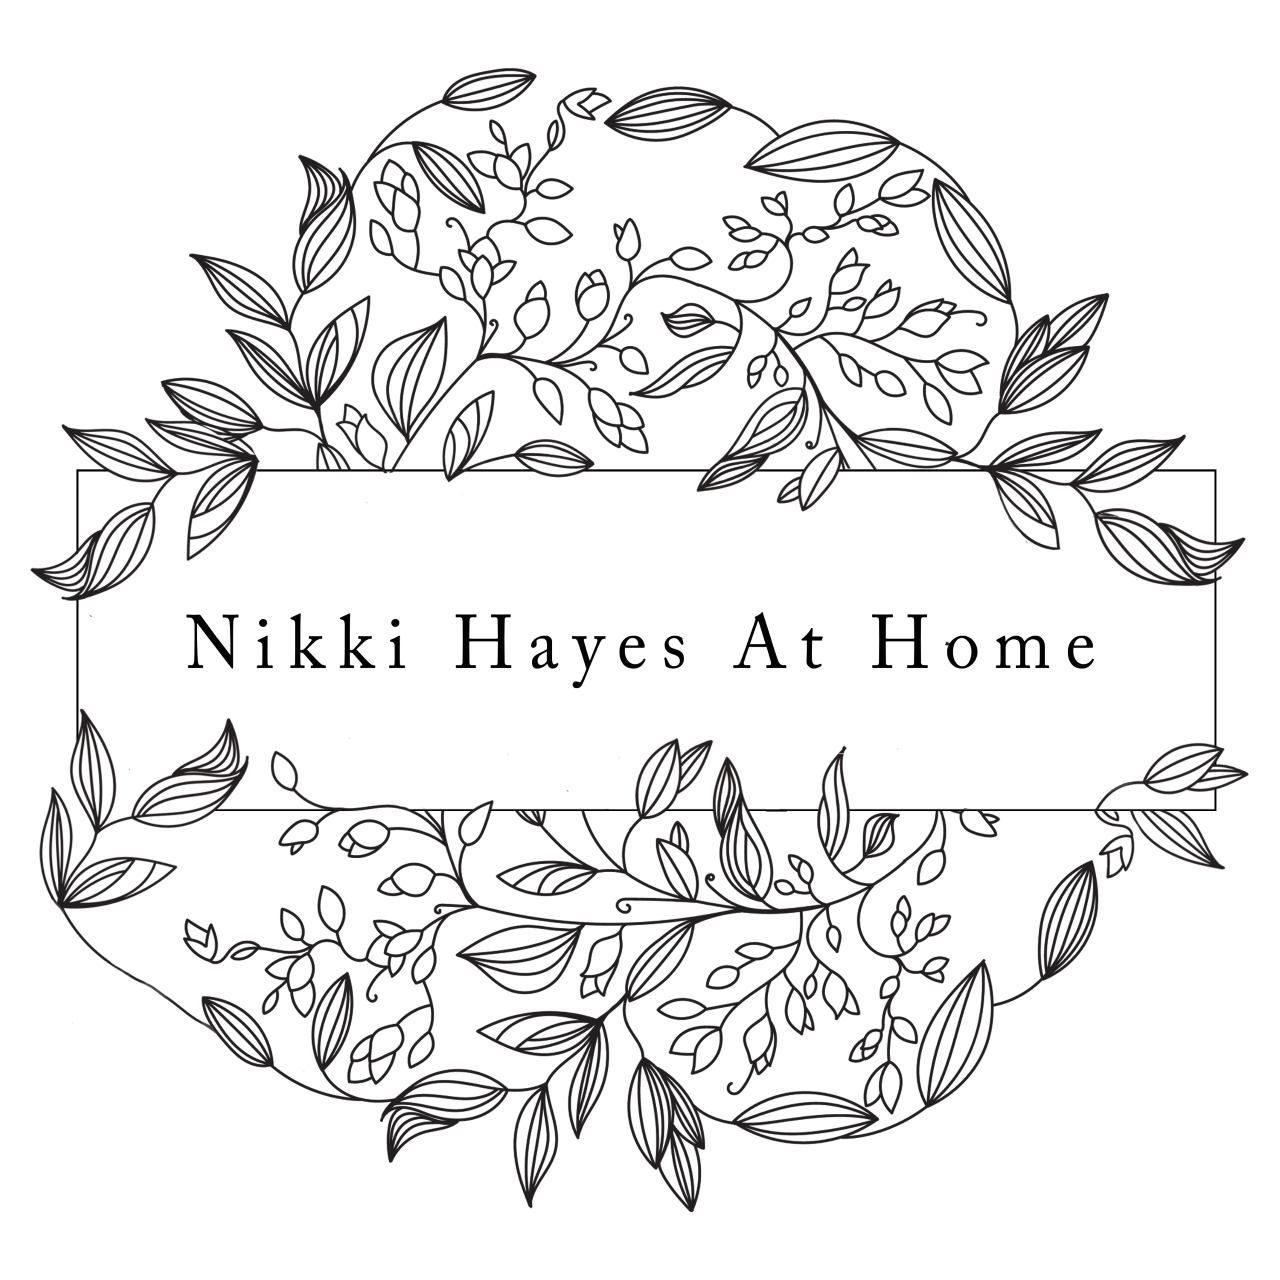 Nikki Hayes